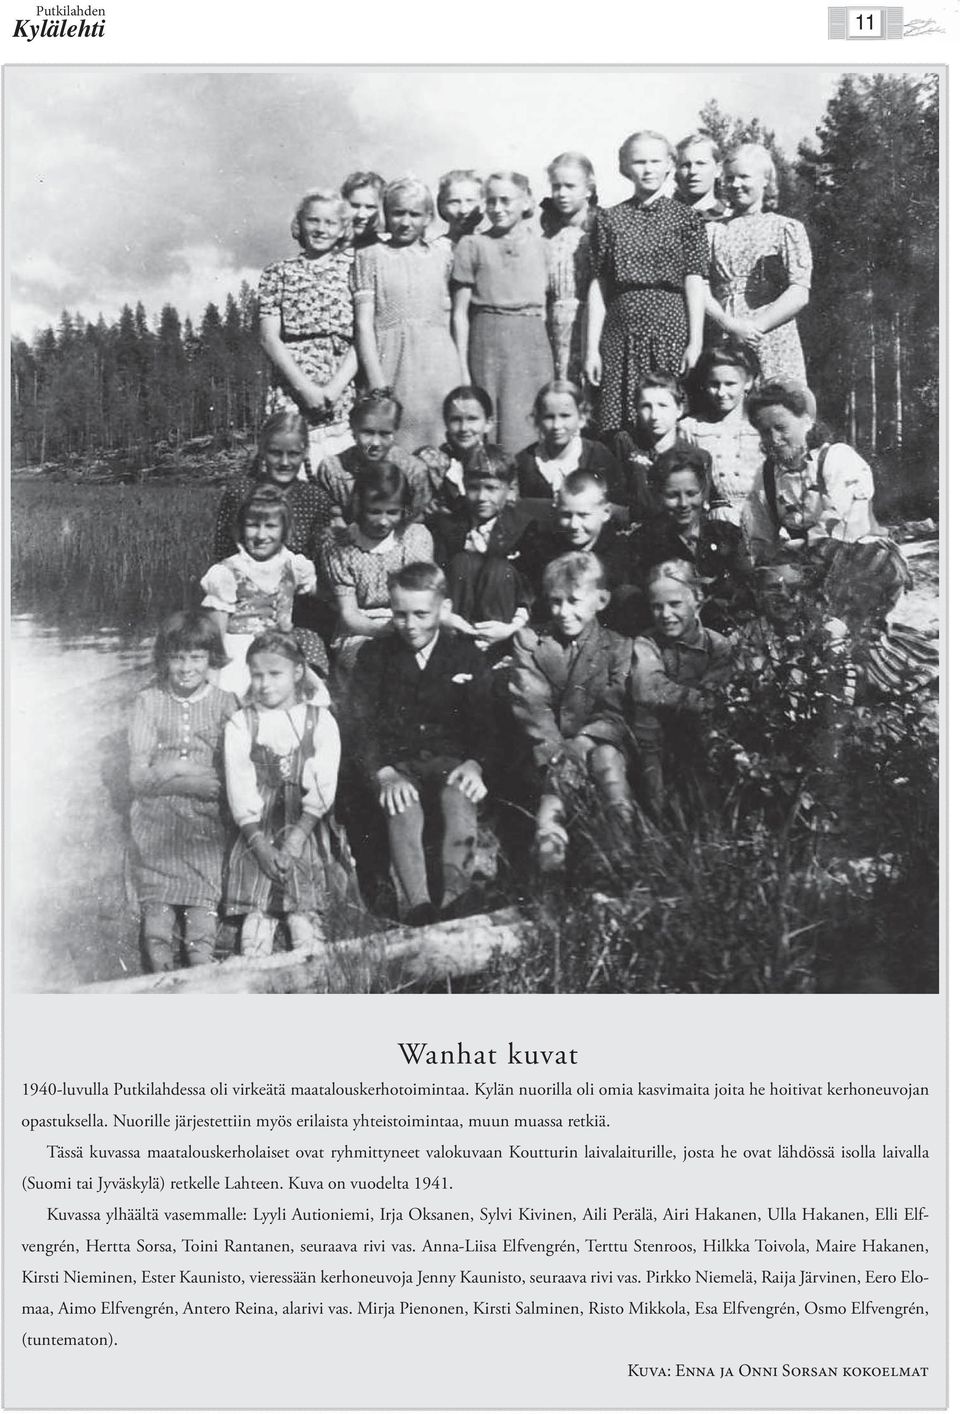 Tässä kuvassa maatalouskerholaiset ovat ryhmittyneet valokuvaan Koutturin laivalaiturille, josta he ovat lähdössä isolla laivalla (Suomi tai Jyväskylä) retkelle Lahteen. Kuva on vuodelta 1941.